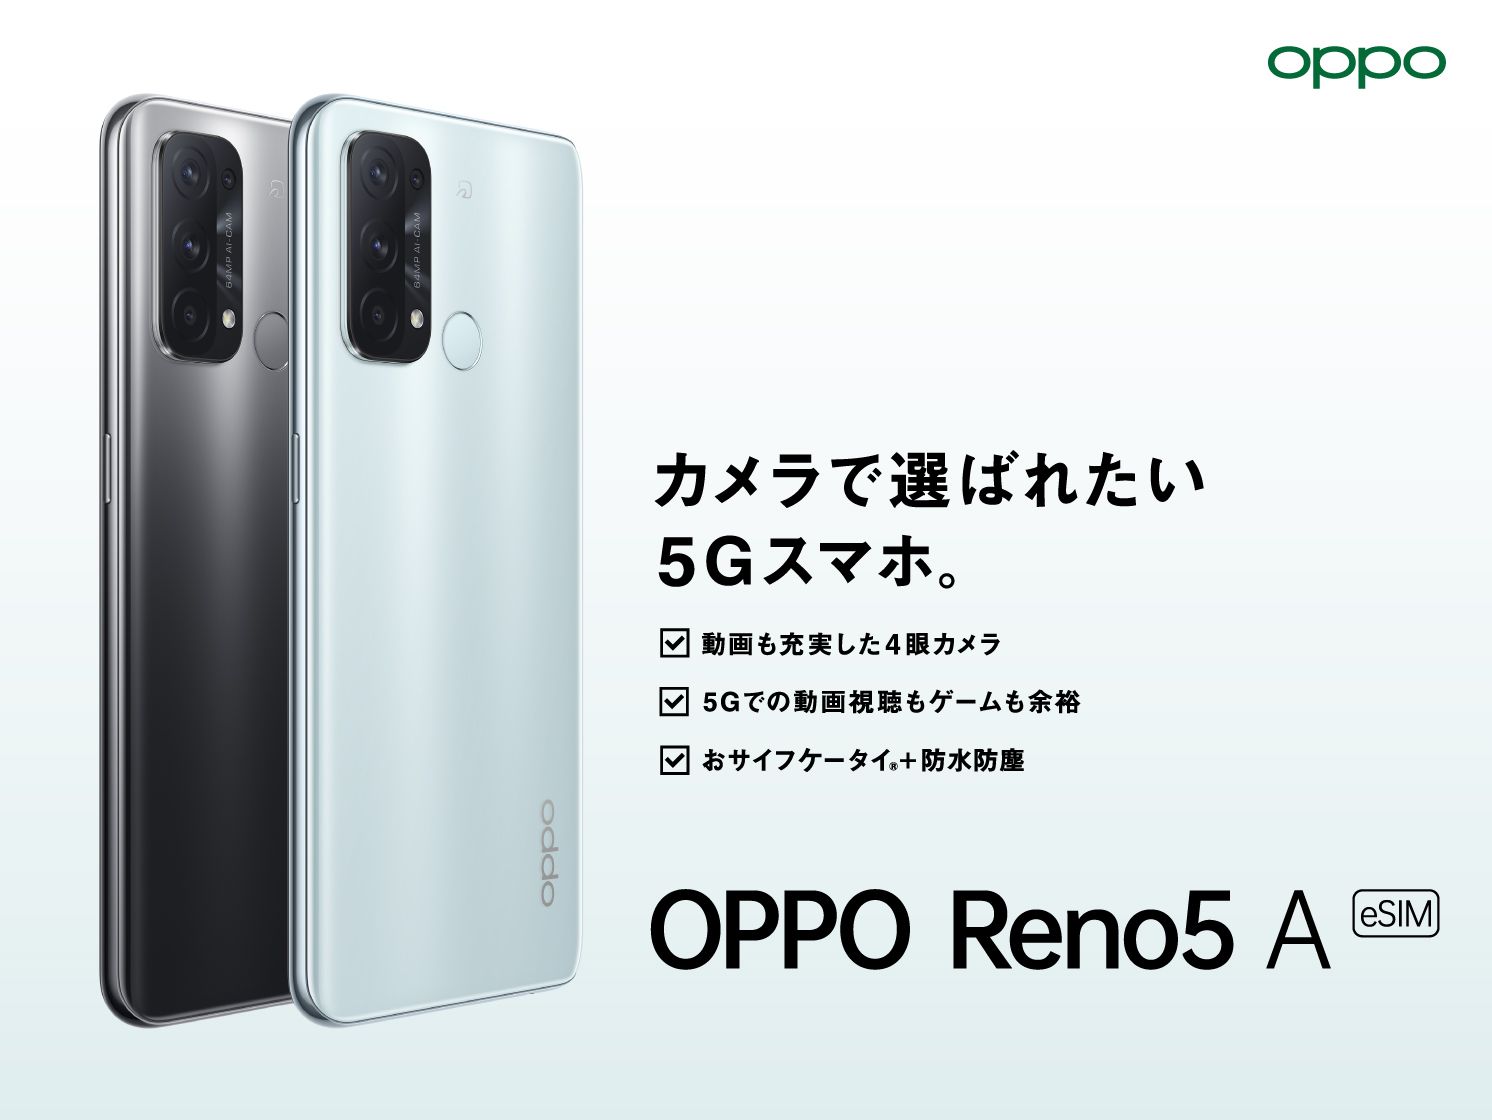 スマートフォン/携帯電話 スマートフォン本体 OPPO Reno5 A (eSIM)」がワイモバイルにて 2月24日(木)から発売開始 